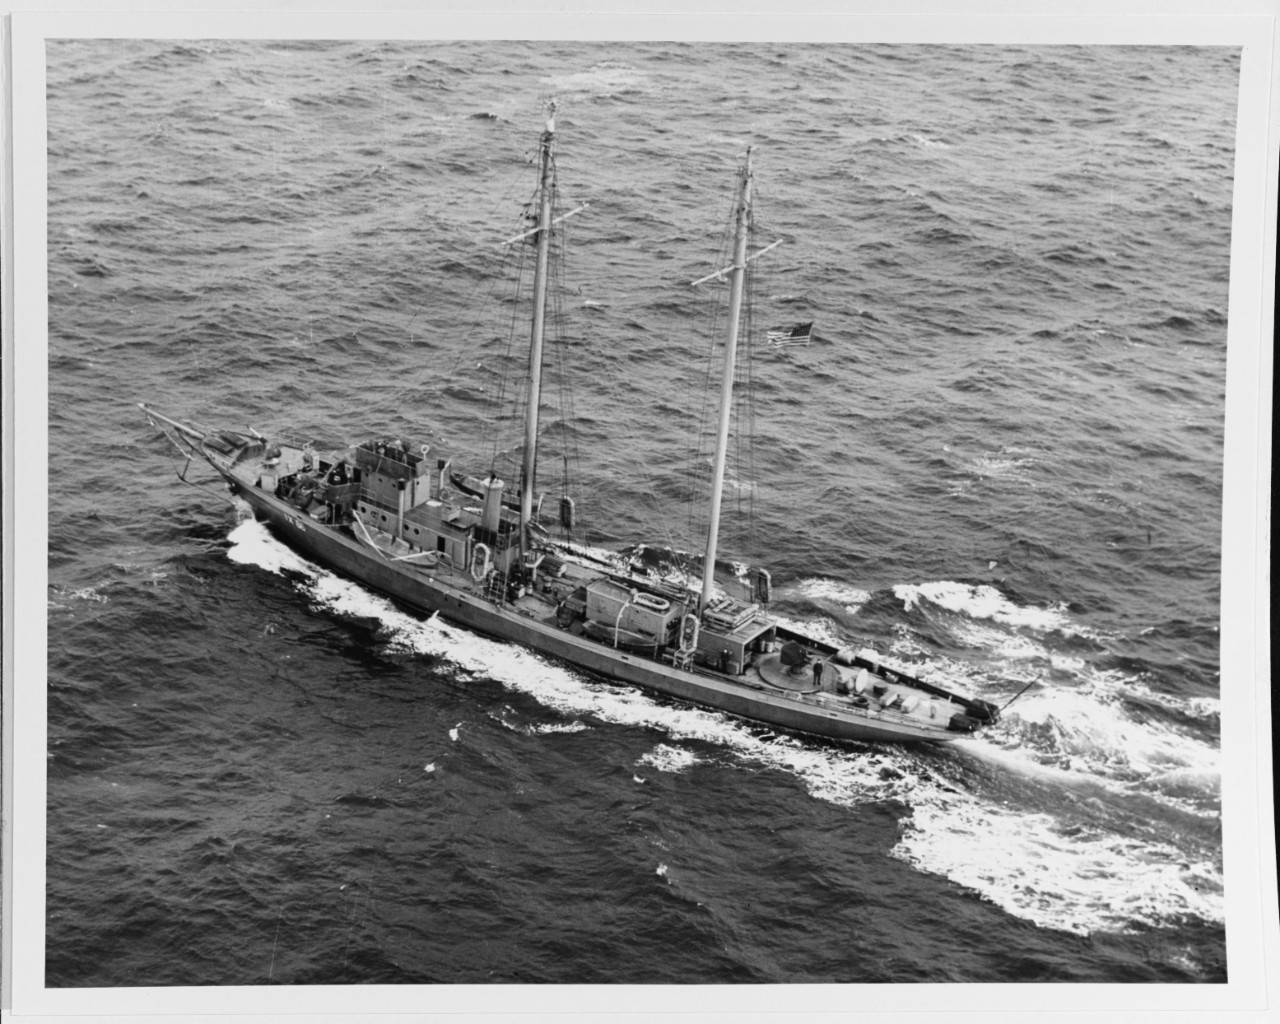 USS MIGRANT (IX-66)